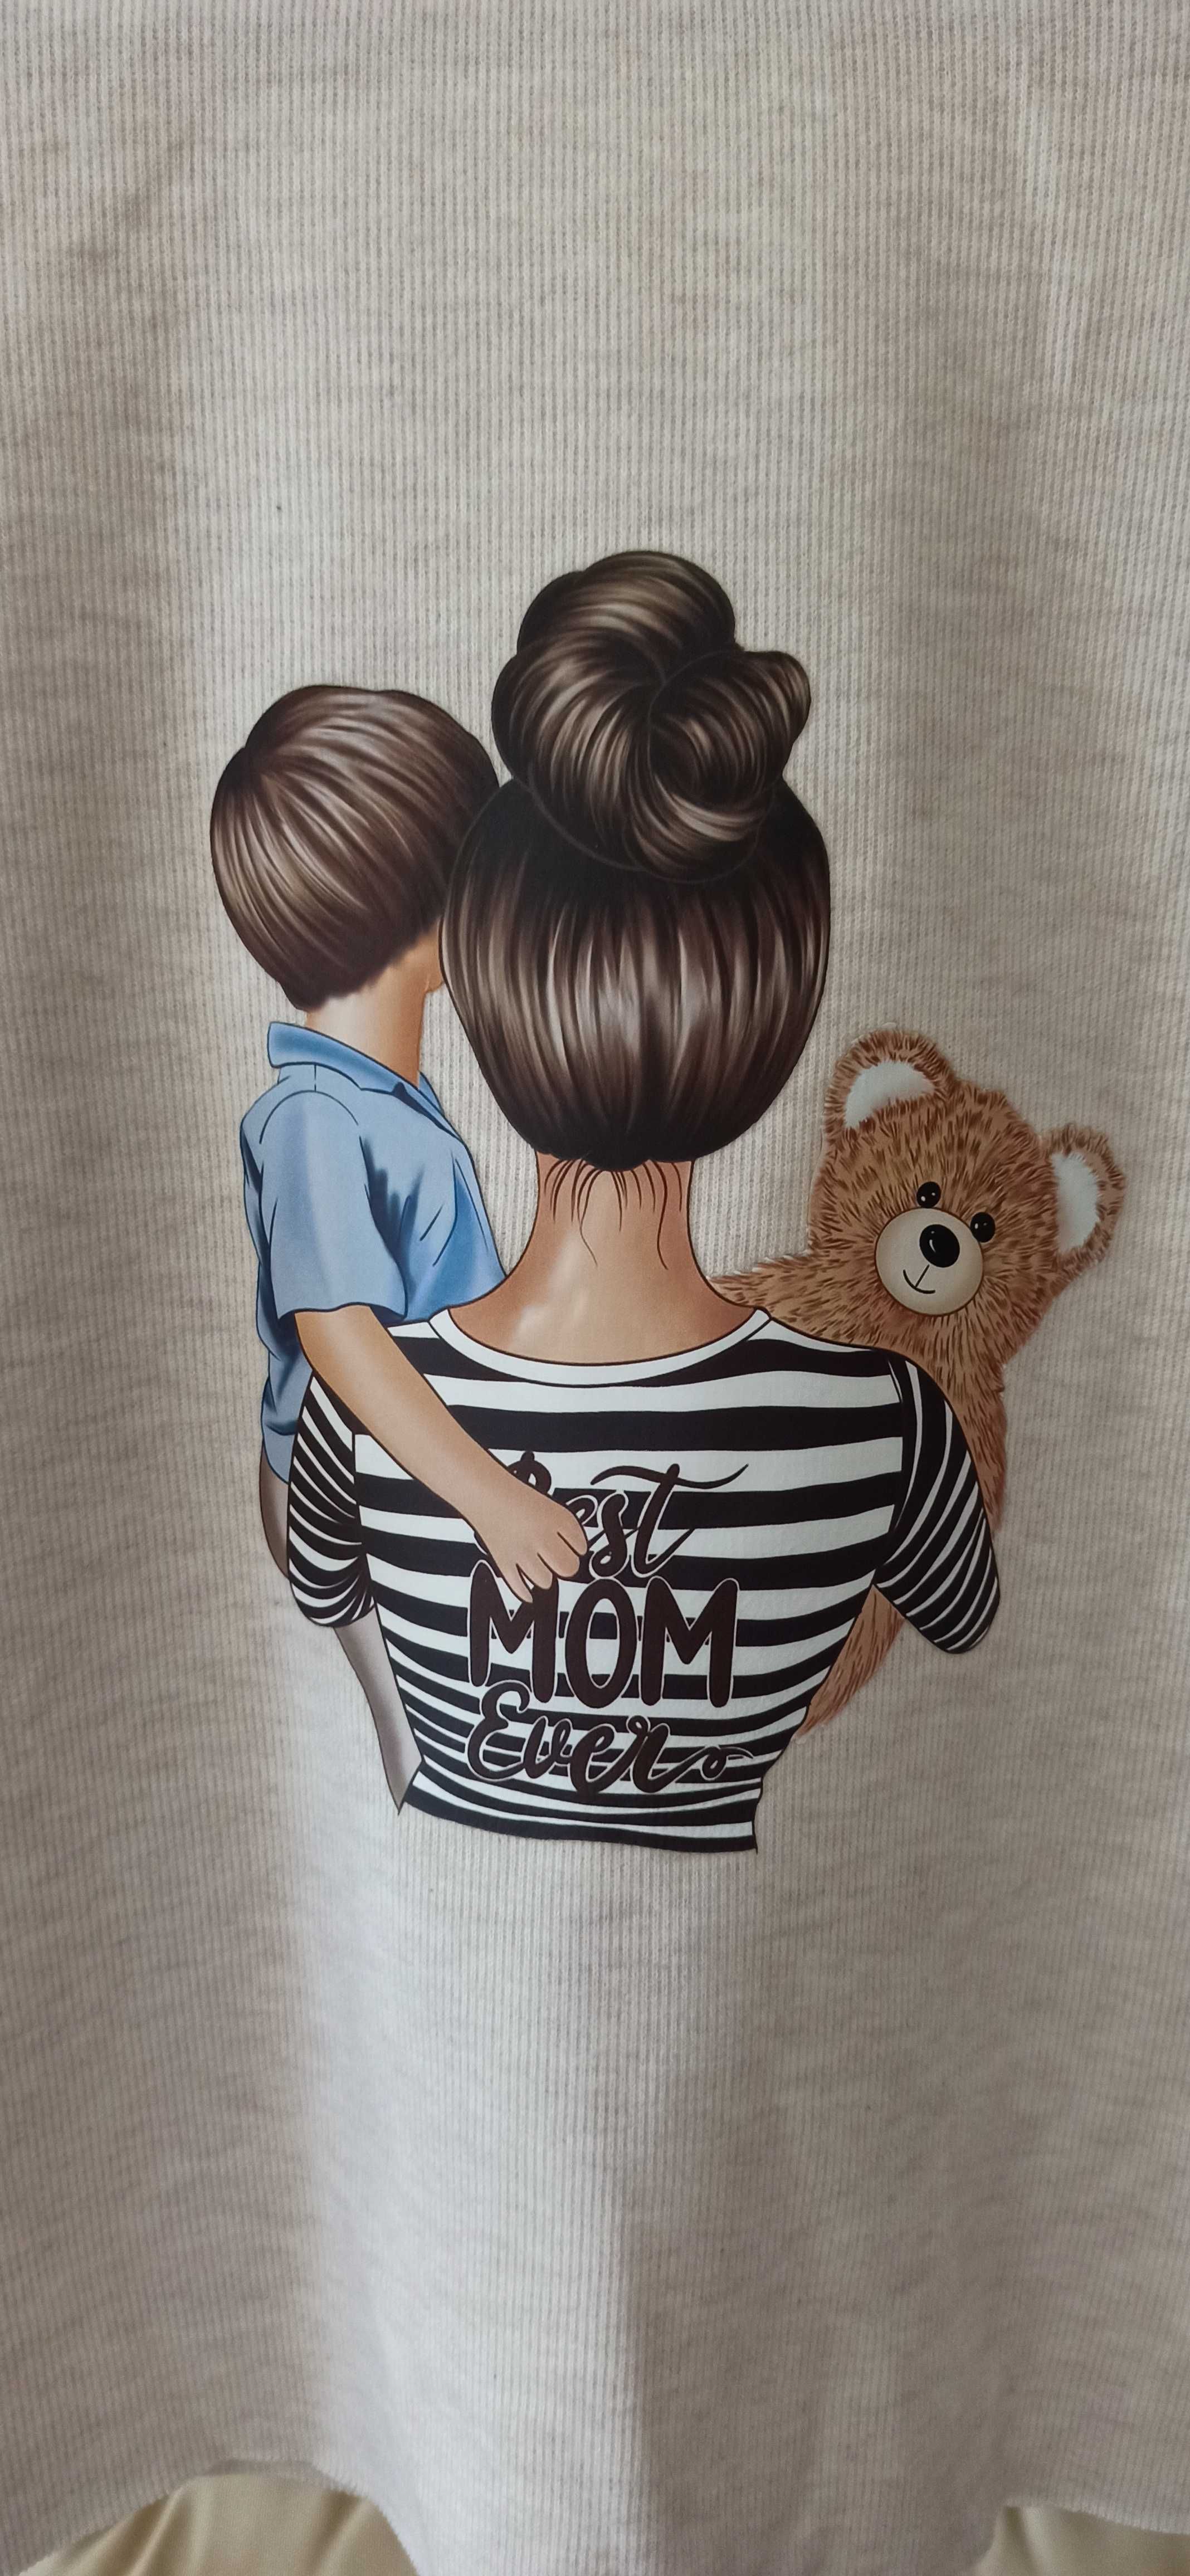 Camisola canelada e exclusiva - Best mom ever - Mãe e filho